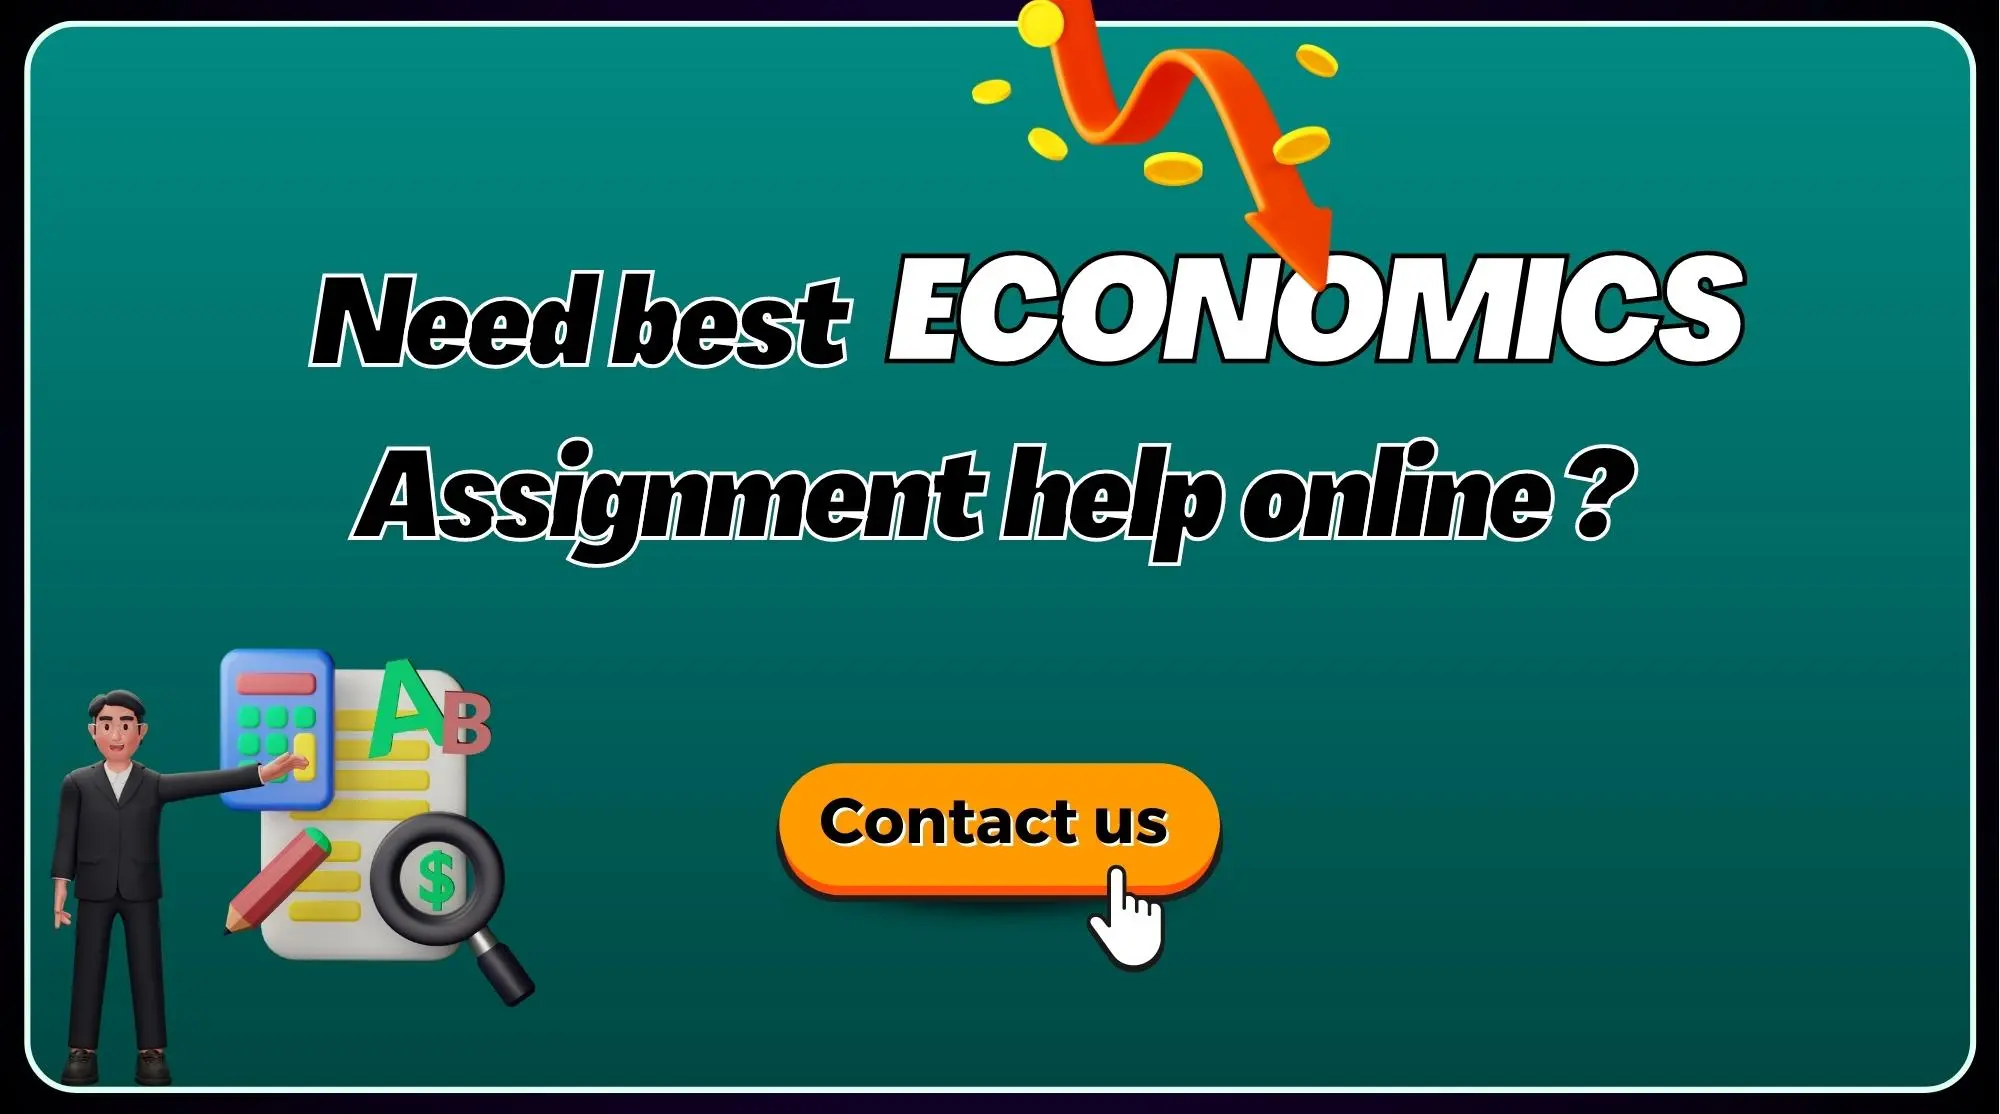 Economics Assignment Help - Get A+ Grades